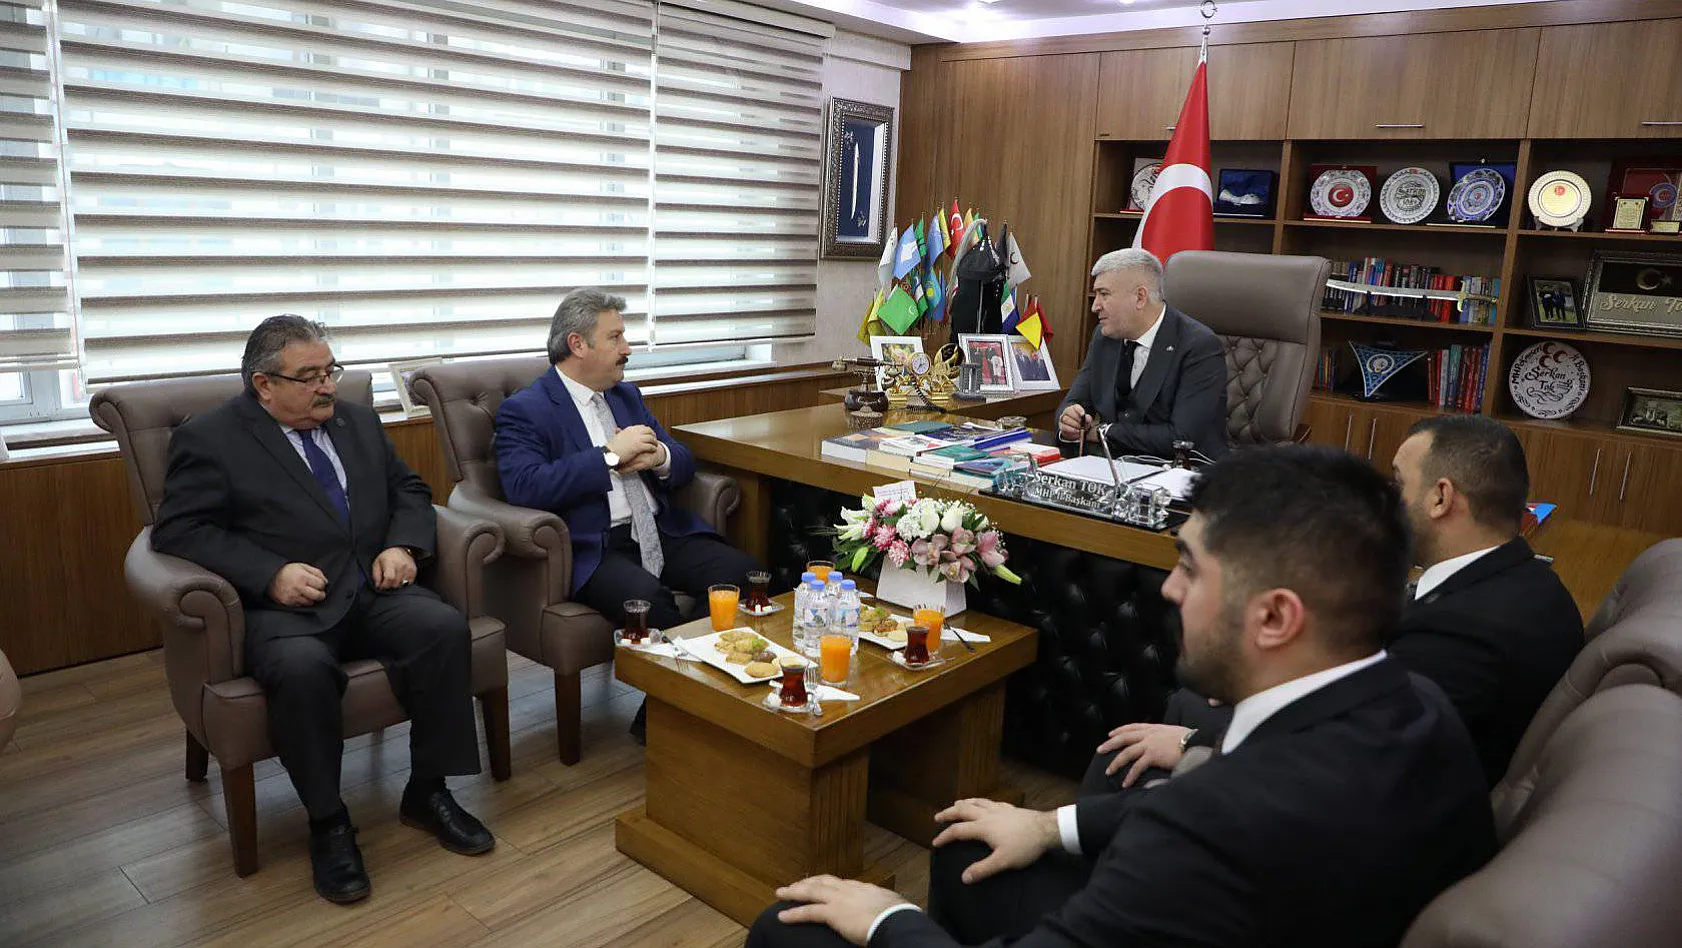 MHP İl Başkanı Tok'tan, Palancıoğlu'na övgü: Oturduğunuz koltuğu göz doldurarak…